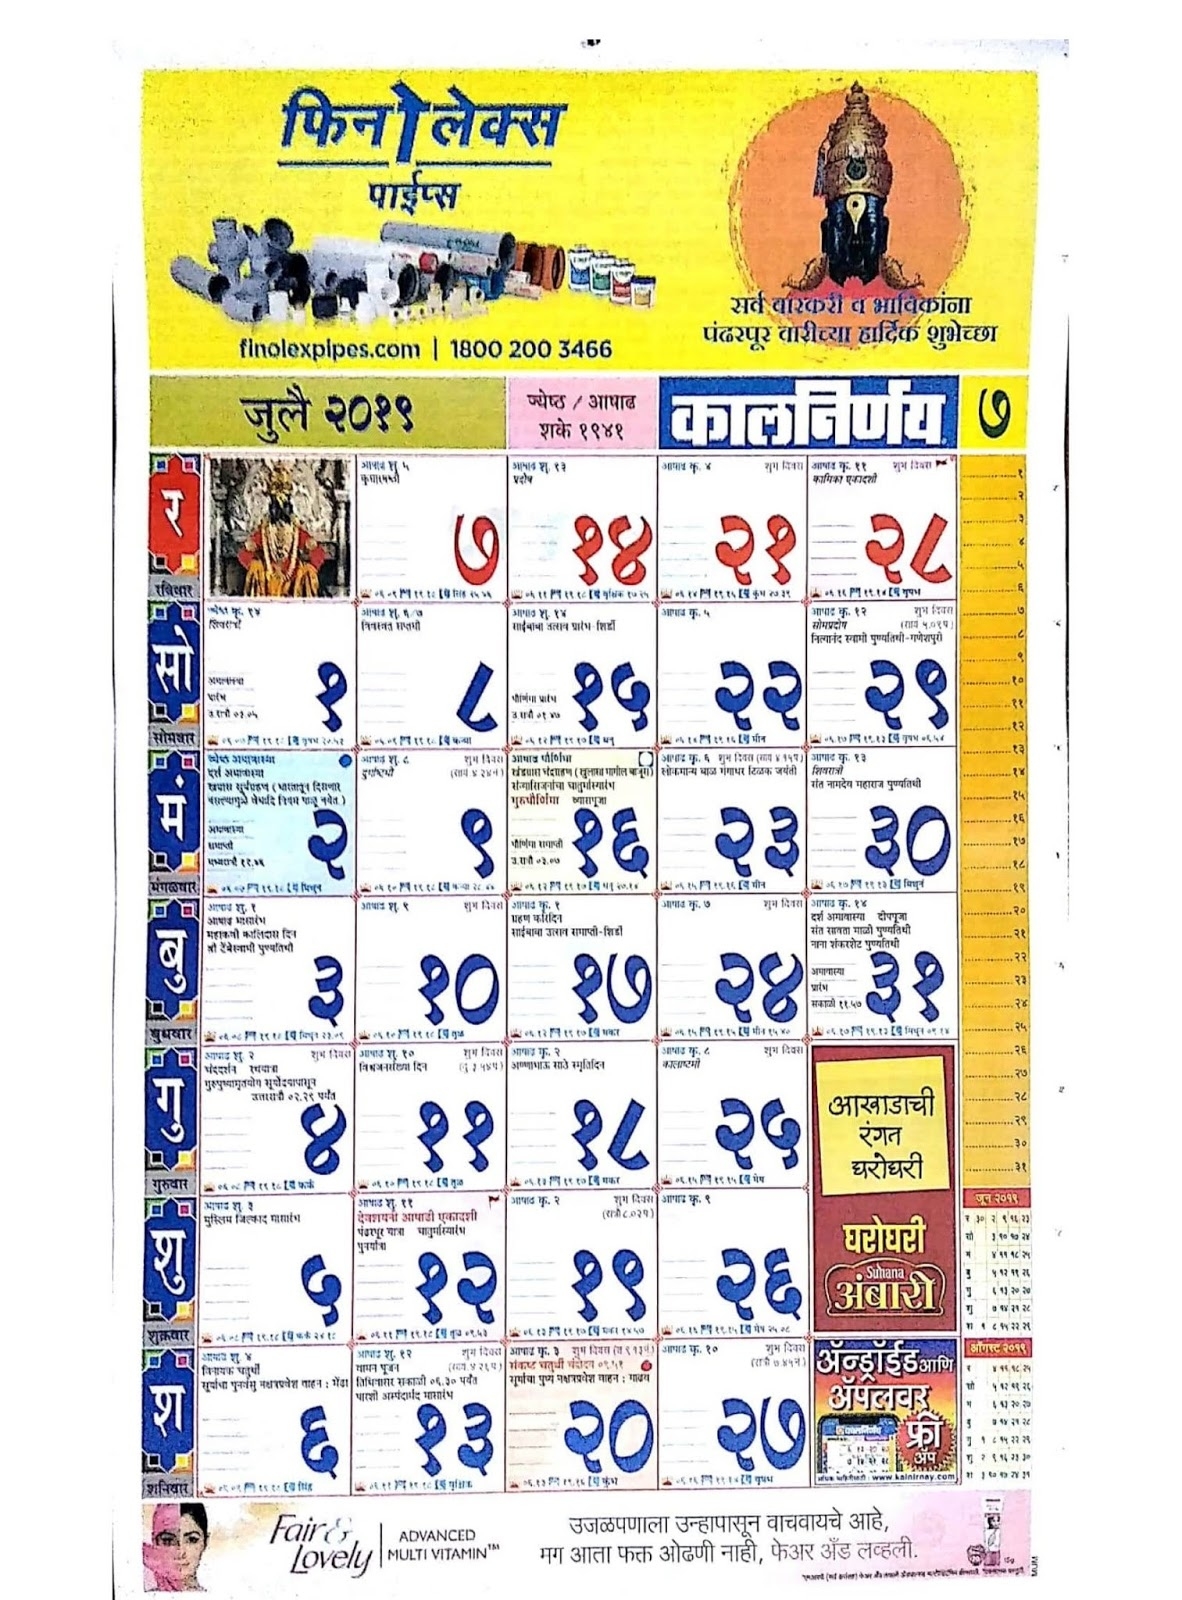 मराठी कालनिर्णय कॅलेंडर २०१९ - Marathi Kalnirnay Calendar 2019 - Marathi Calendar Pdf Free Kalnirnay November 2021 Marathi Calendar Pdf